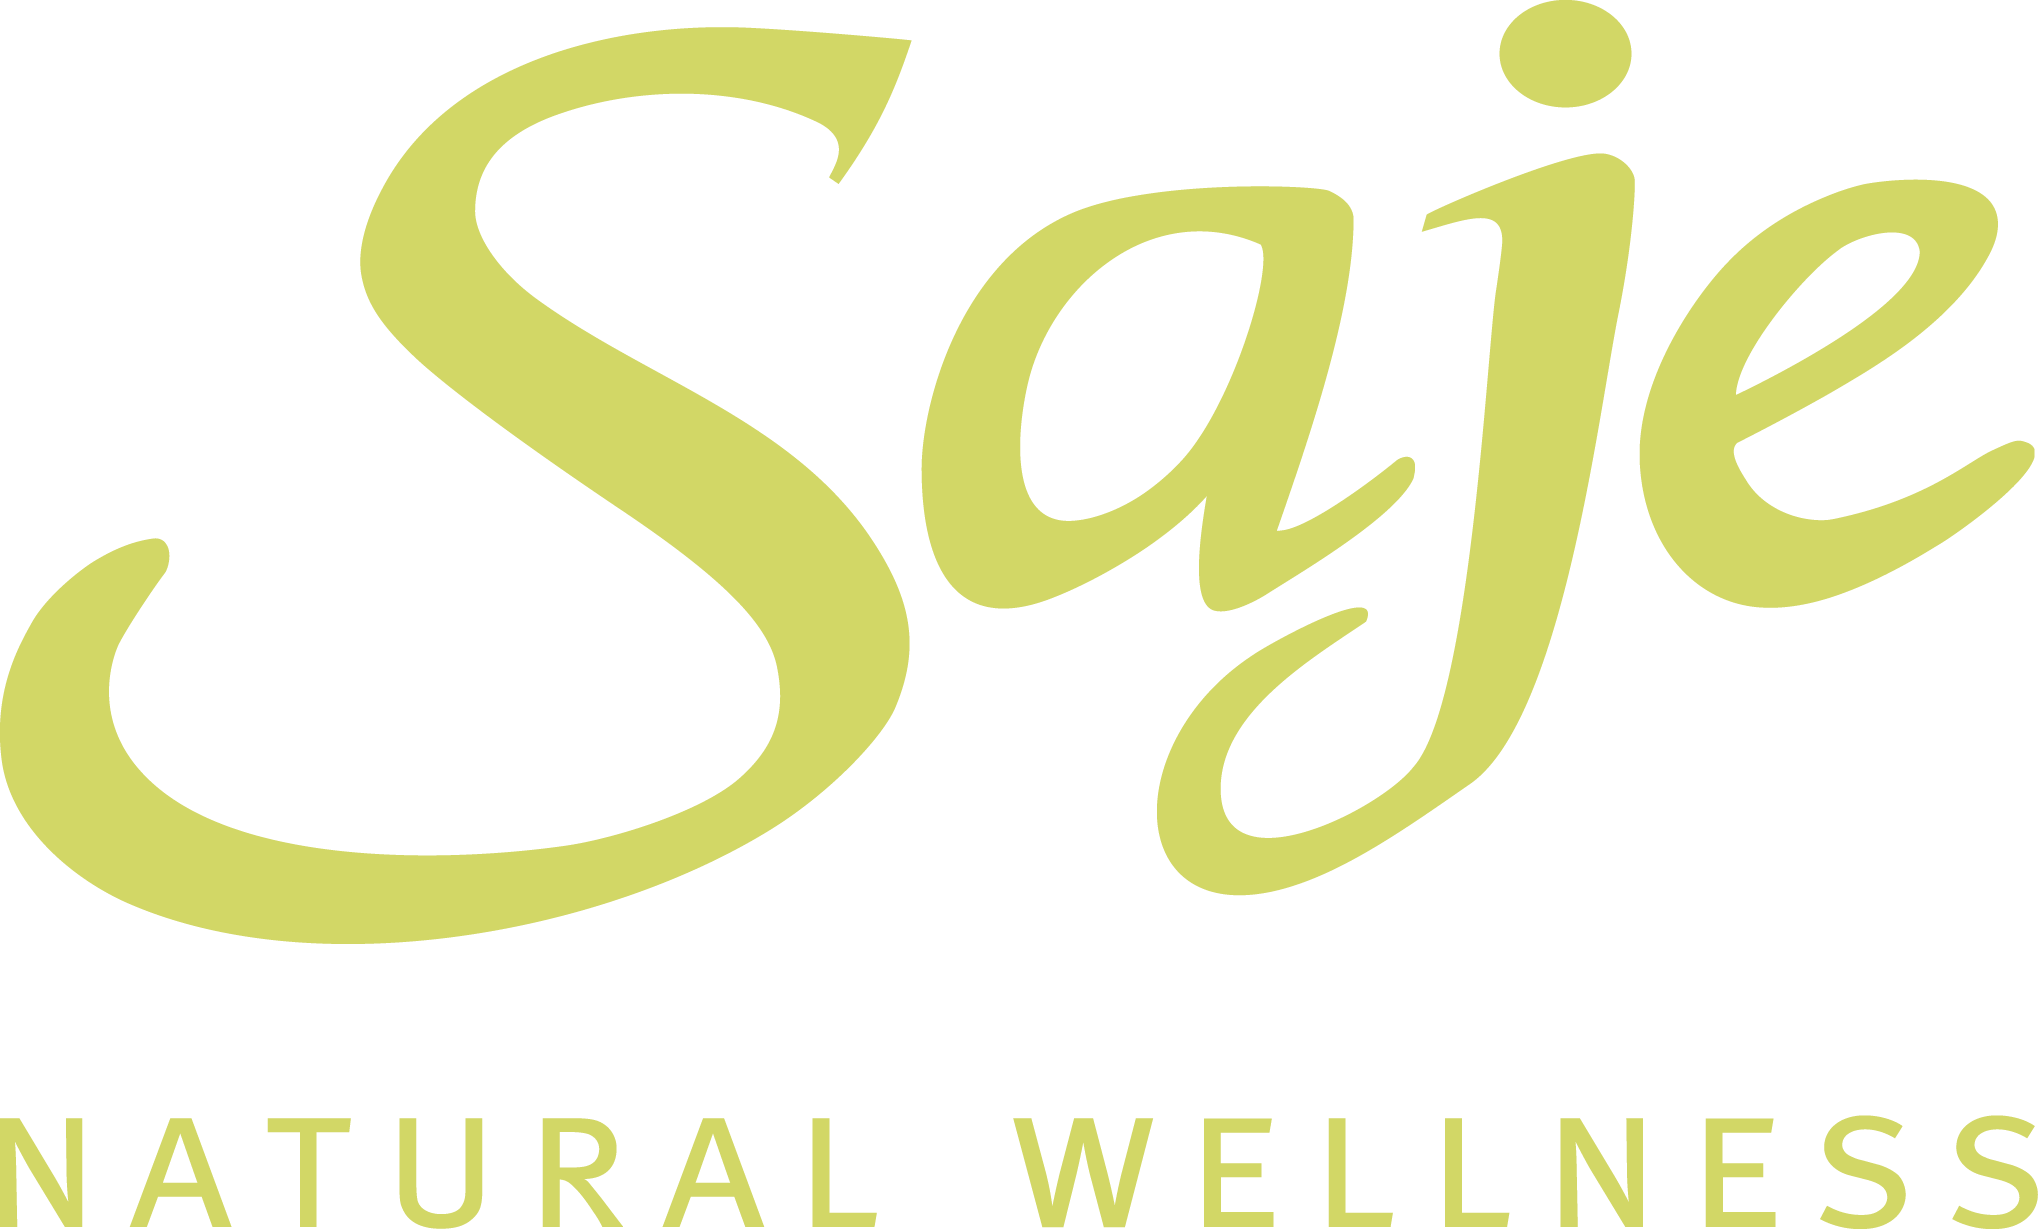 Saje Natural Wellness logo